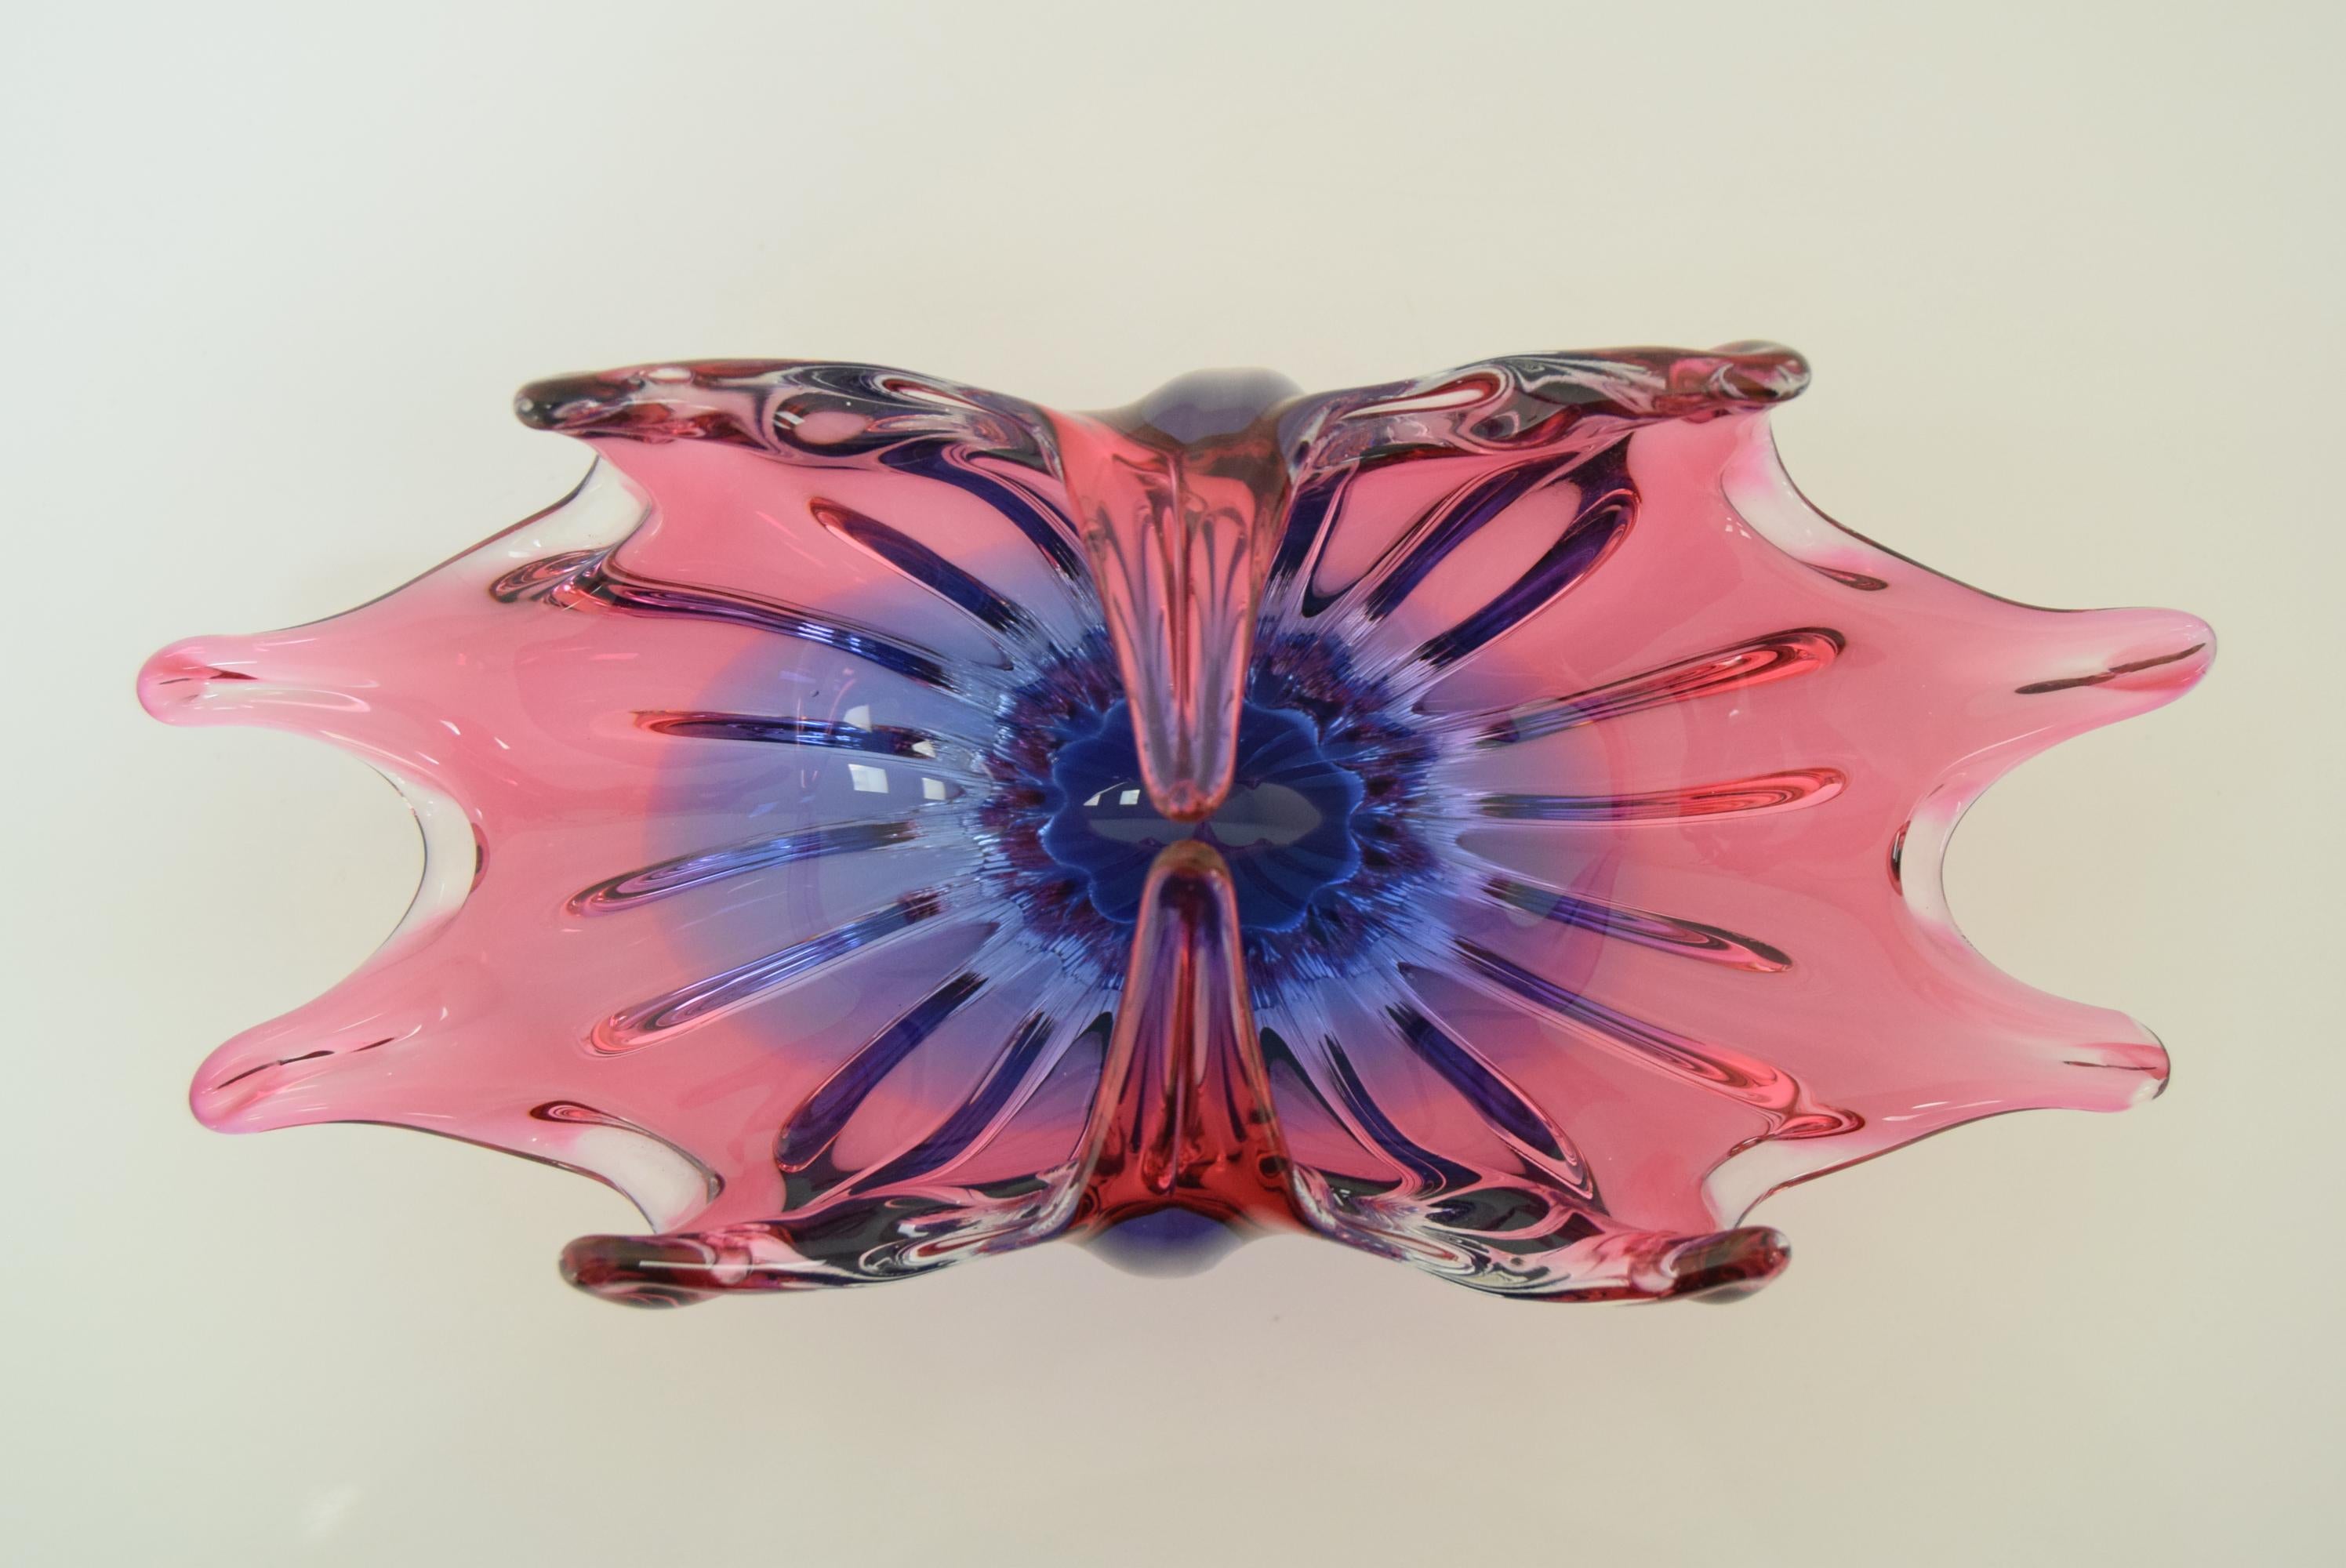 Mid-Century Modern Art Glass Bowl Designed by Josef Hospodka for Chribska, 1960's For Sale